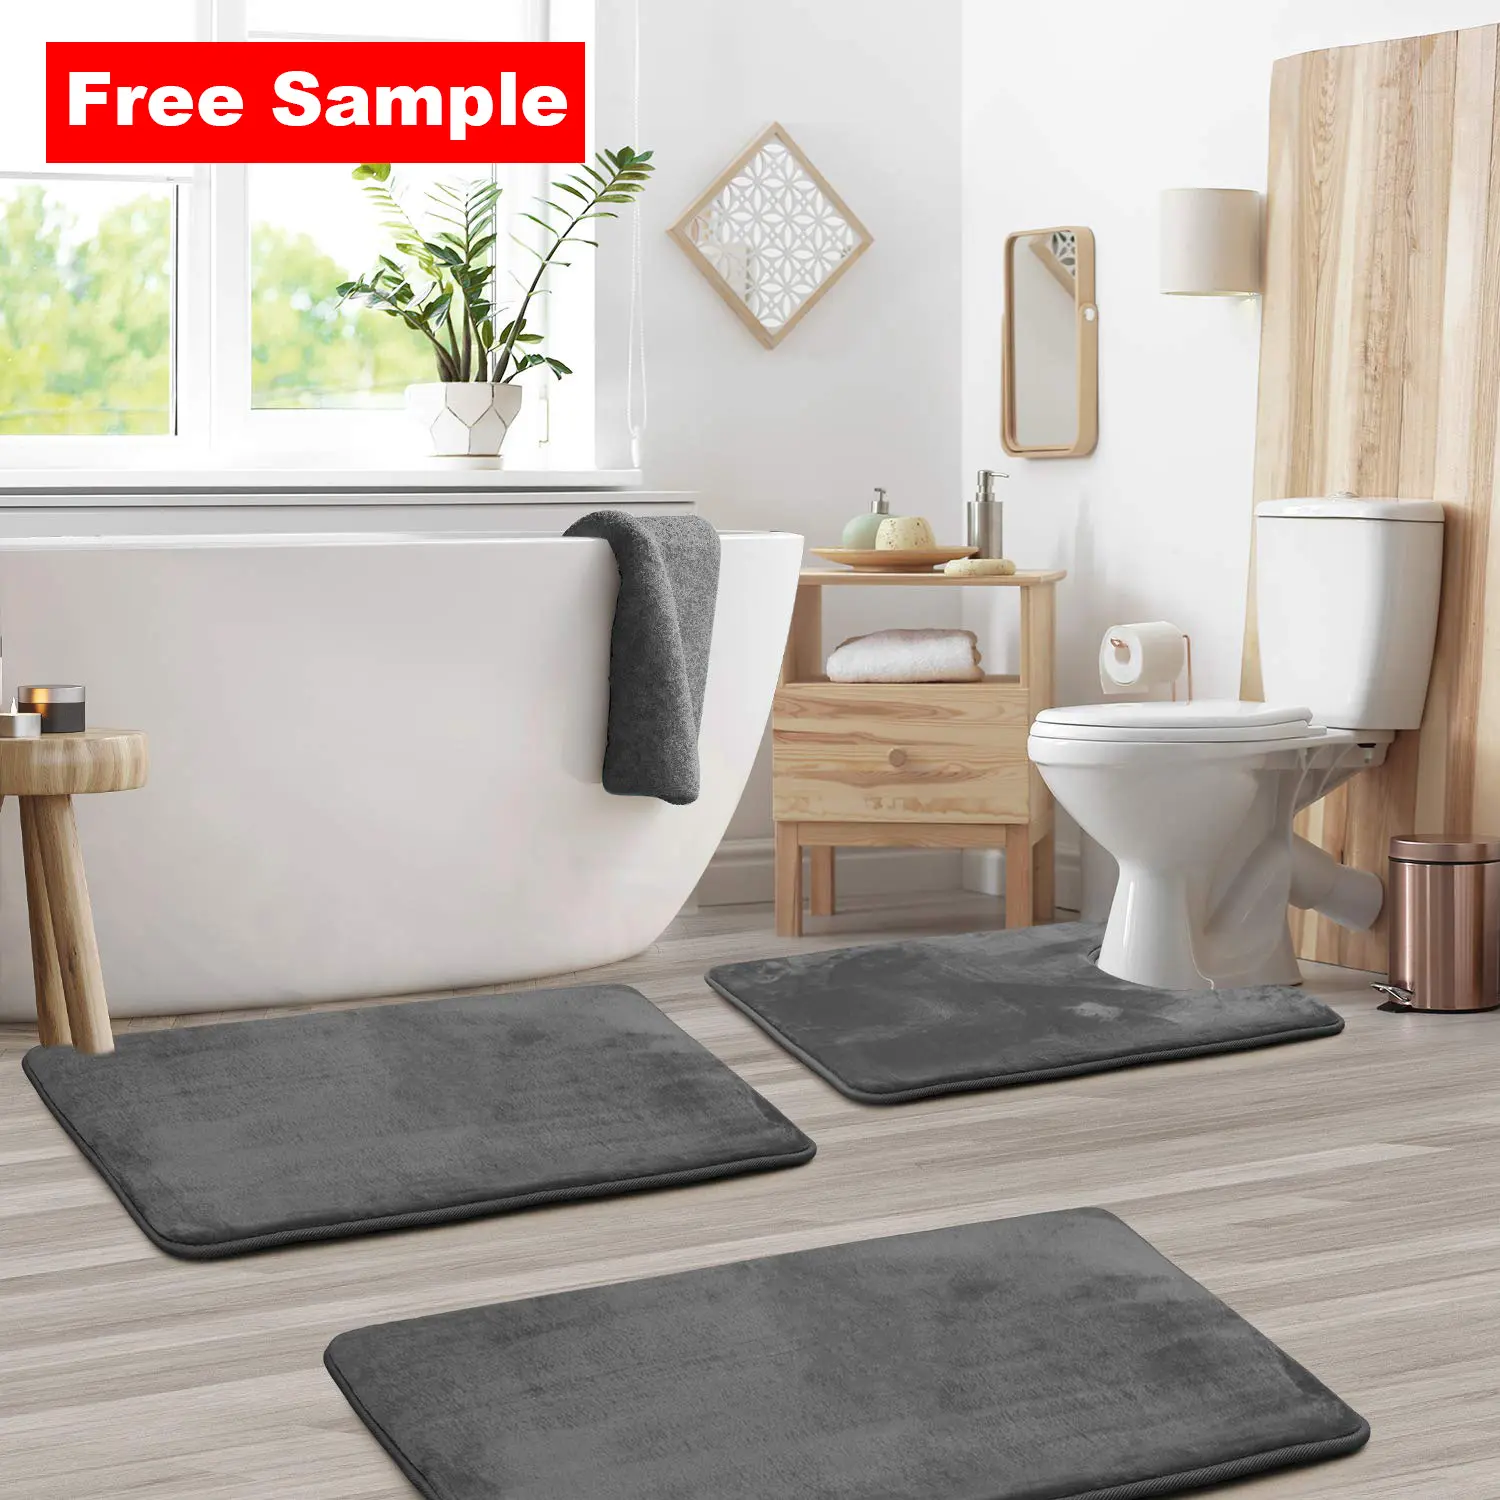 Large Black Bath Mat Set 5pcs Bathroom Rug Contour Toilet Lid Cover Memory Foam 